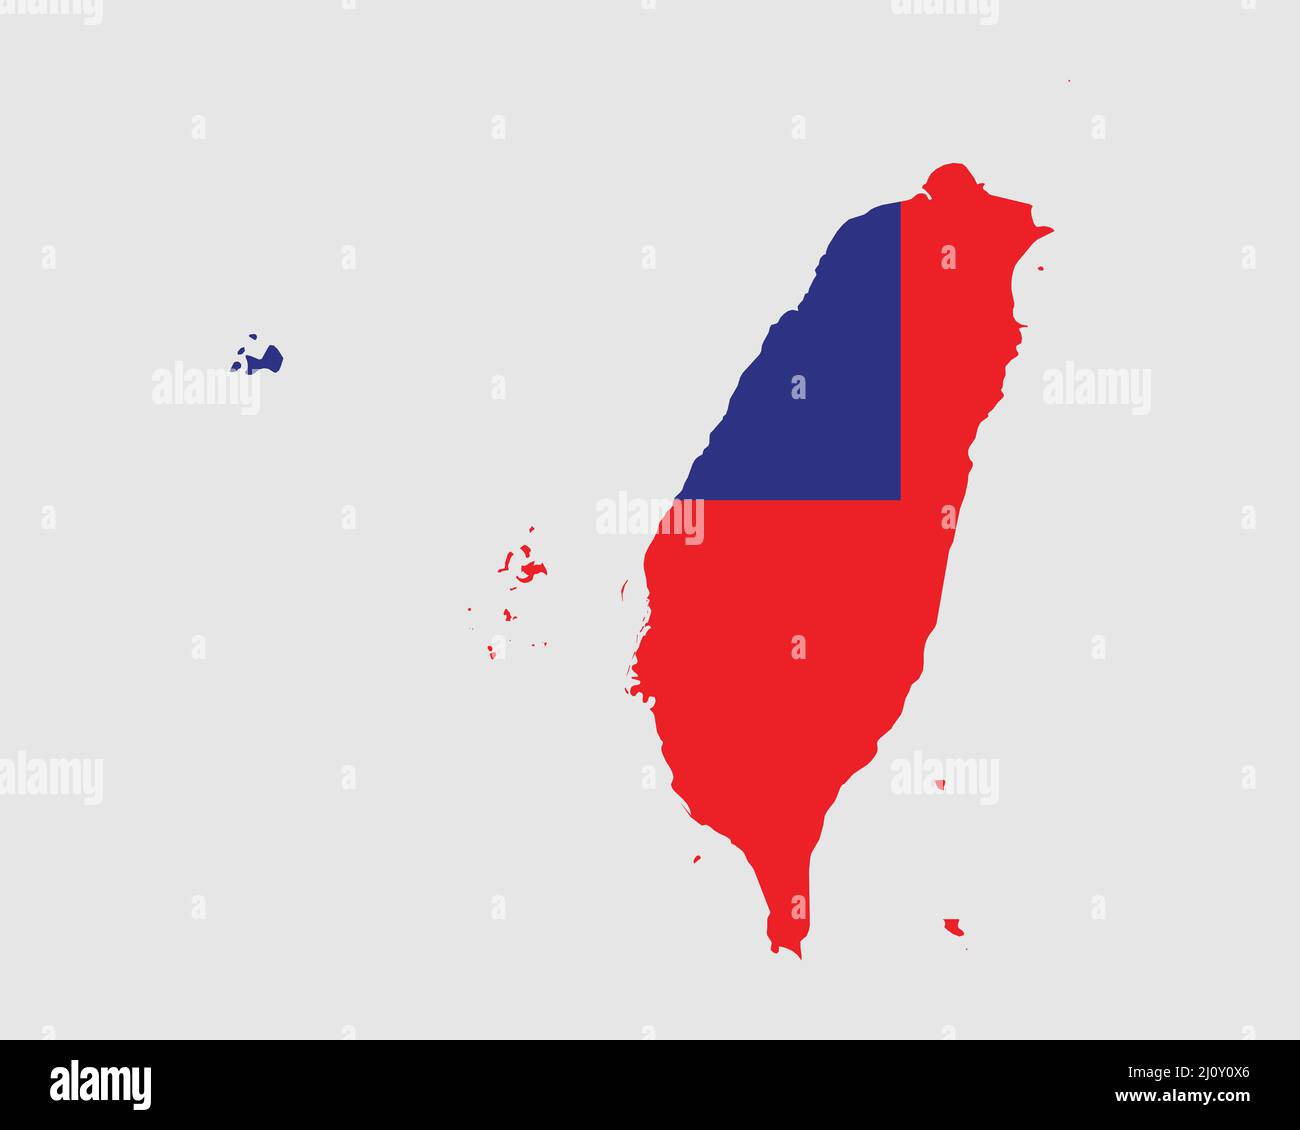 Taiwan Flaggenkarte. Karte der Republik China mit dem taiwanesischen Länderbanner. Vektorgrafik. Stock Vektor